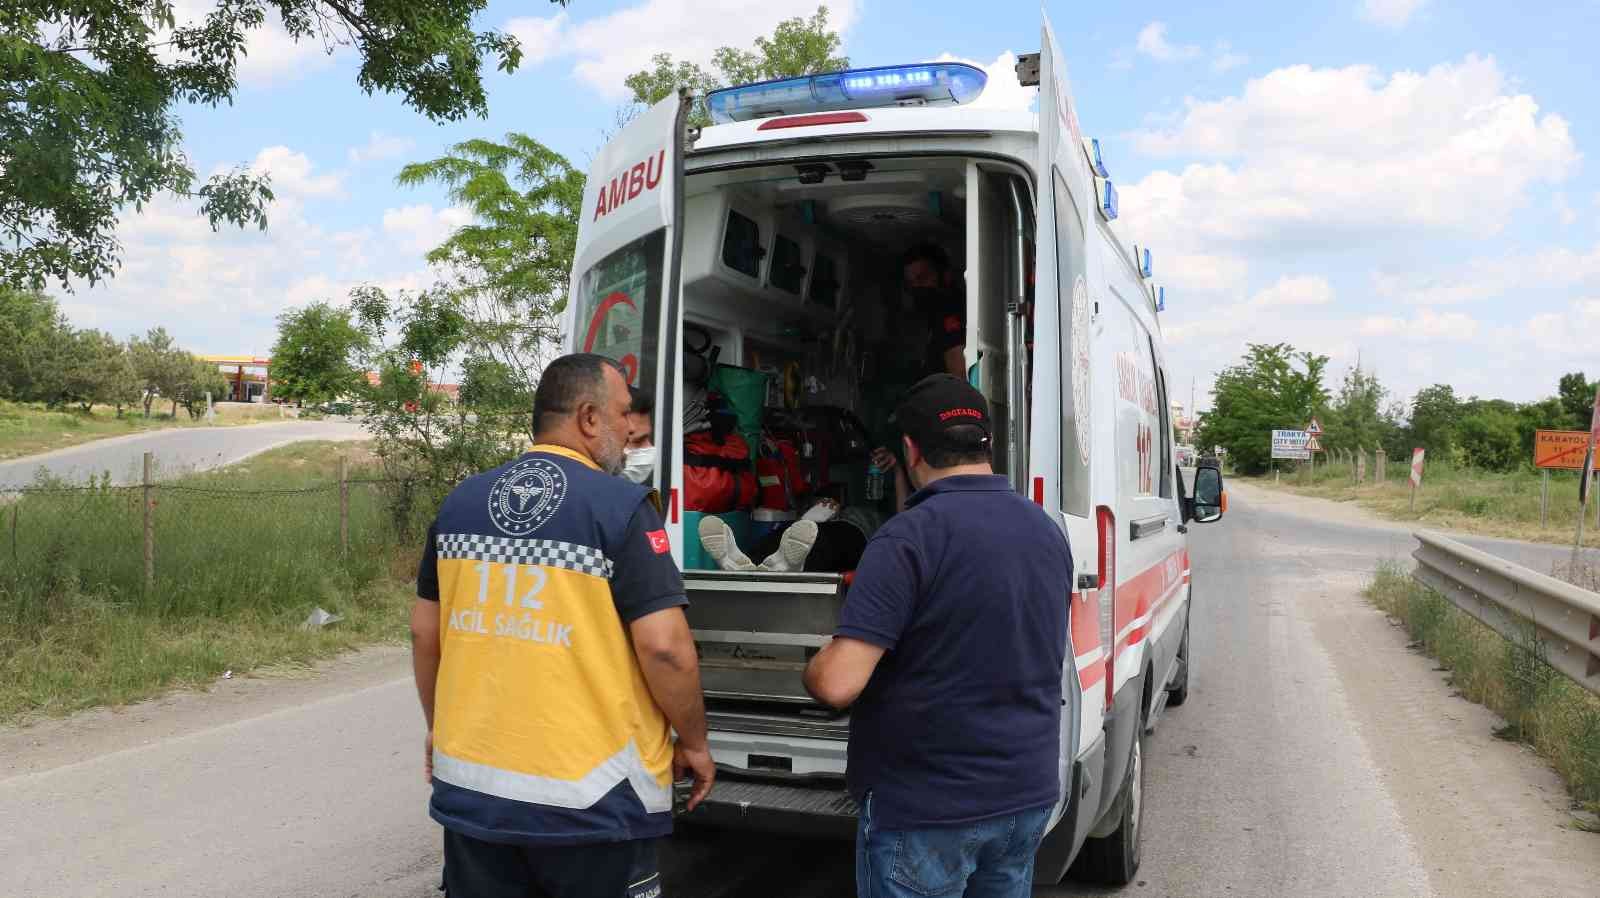 Edirne’de Kapıkule yolunda meydana gelen kazada yaralanan 2 sürücü hastaneye kaldırıldı. Edinilen bilgiye göre kaza, Edirne Kapıkule yolunda ...